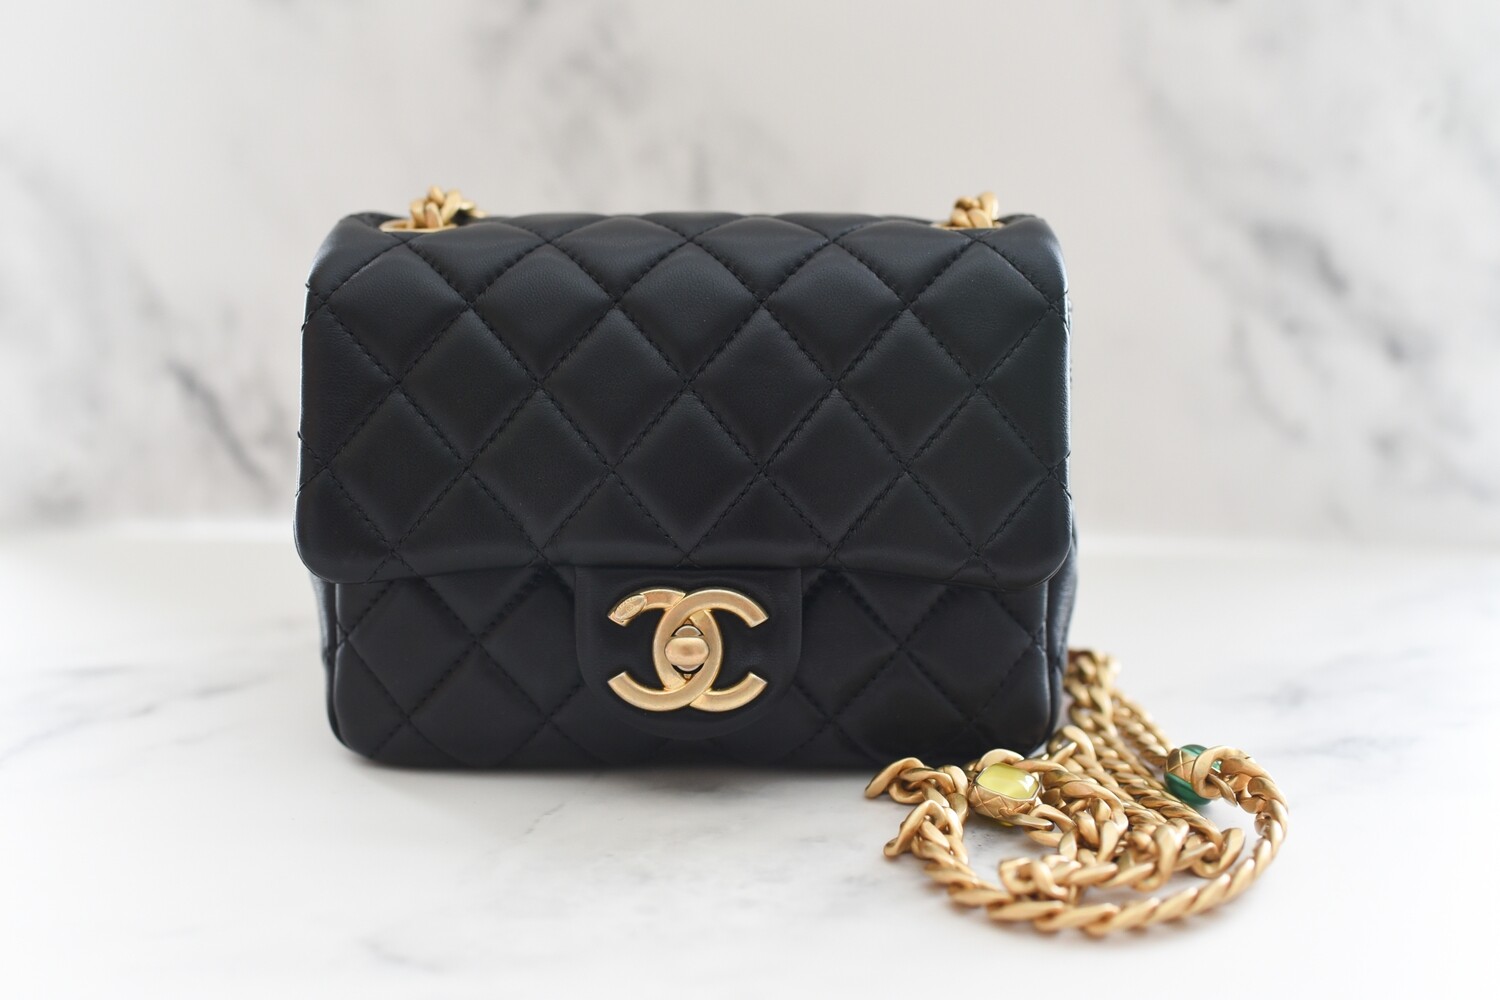 Chanel Classic Mini Flap Bag Beige